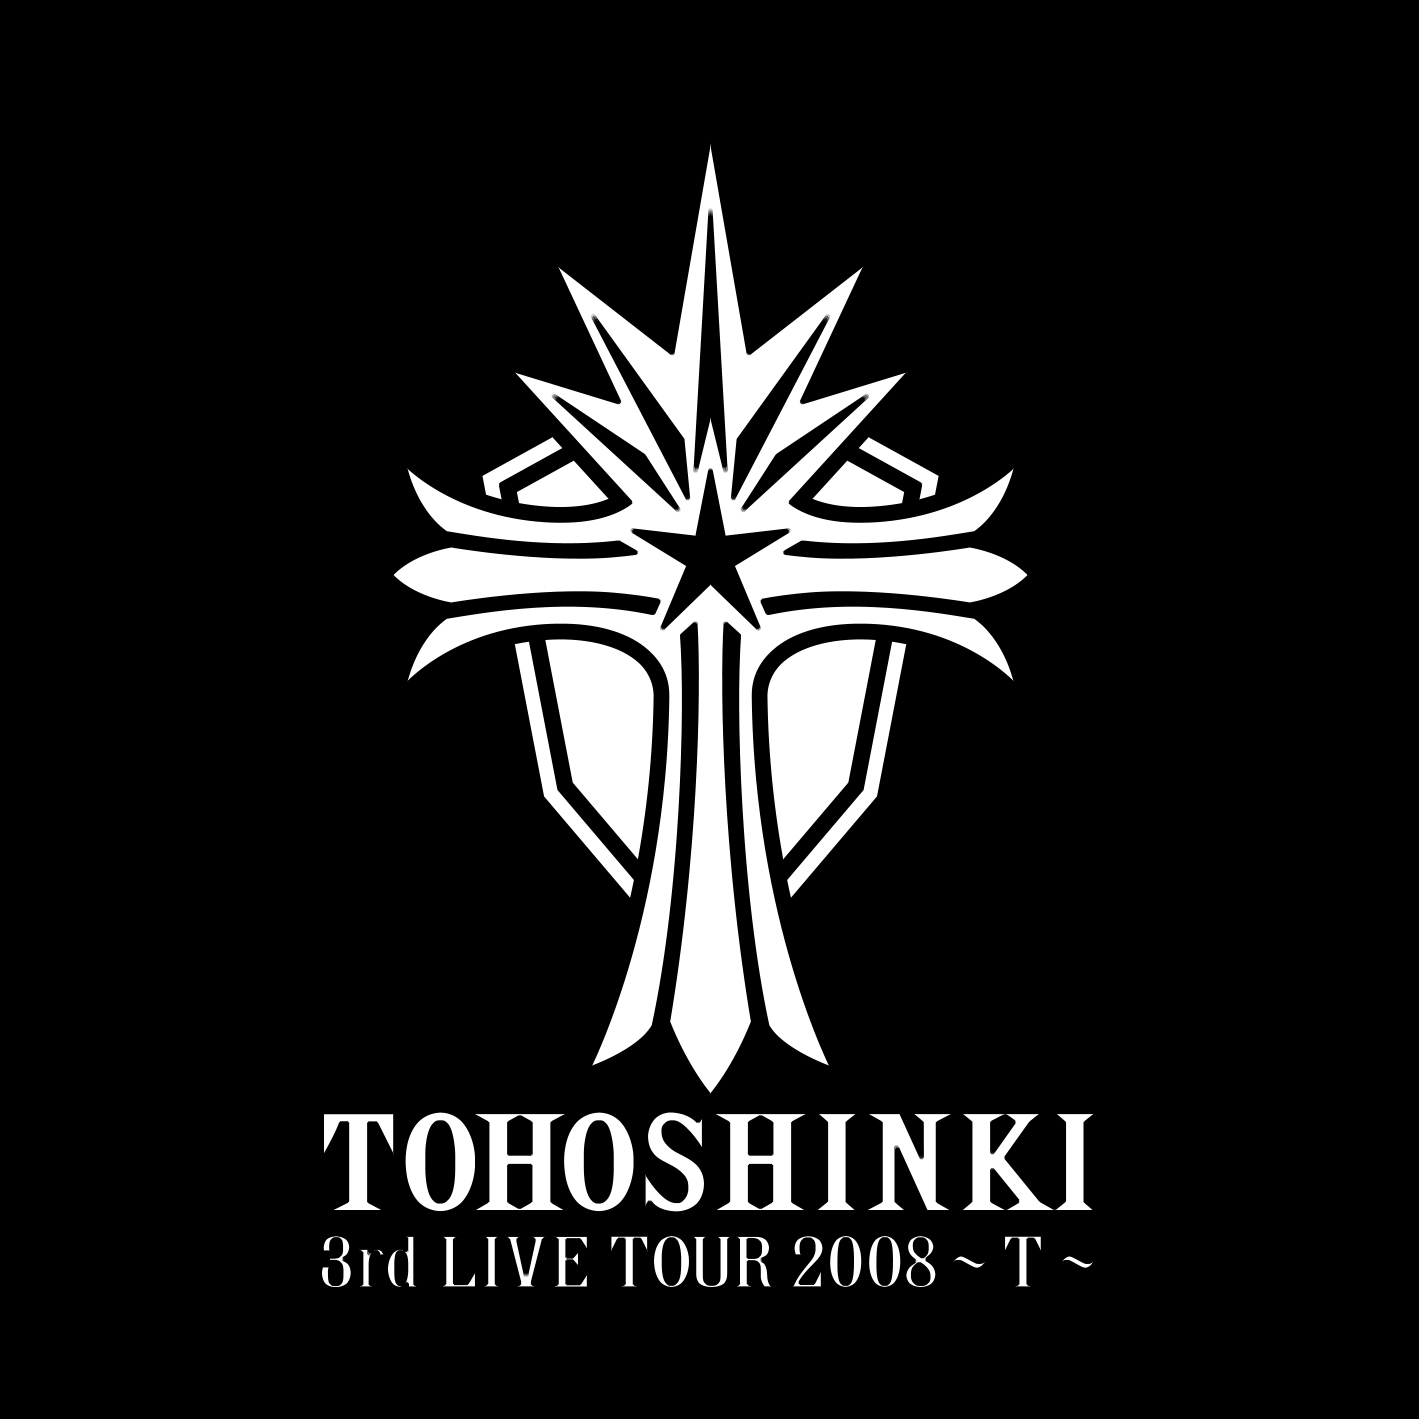 TOHOSHINKI「3rd LIVE TOUR 2008 ～T～」LOGO